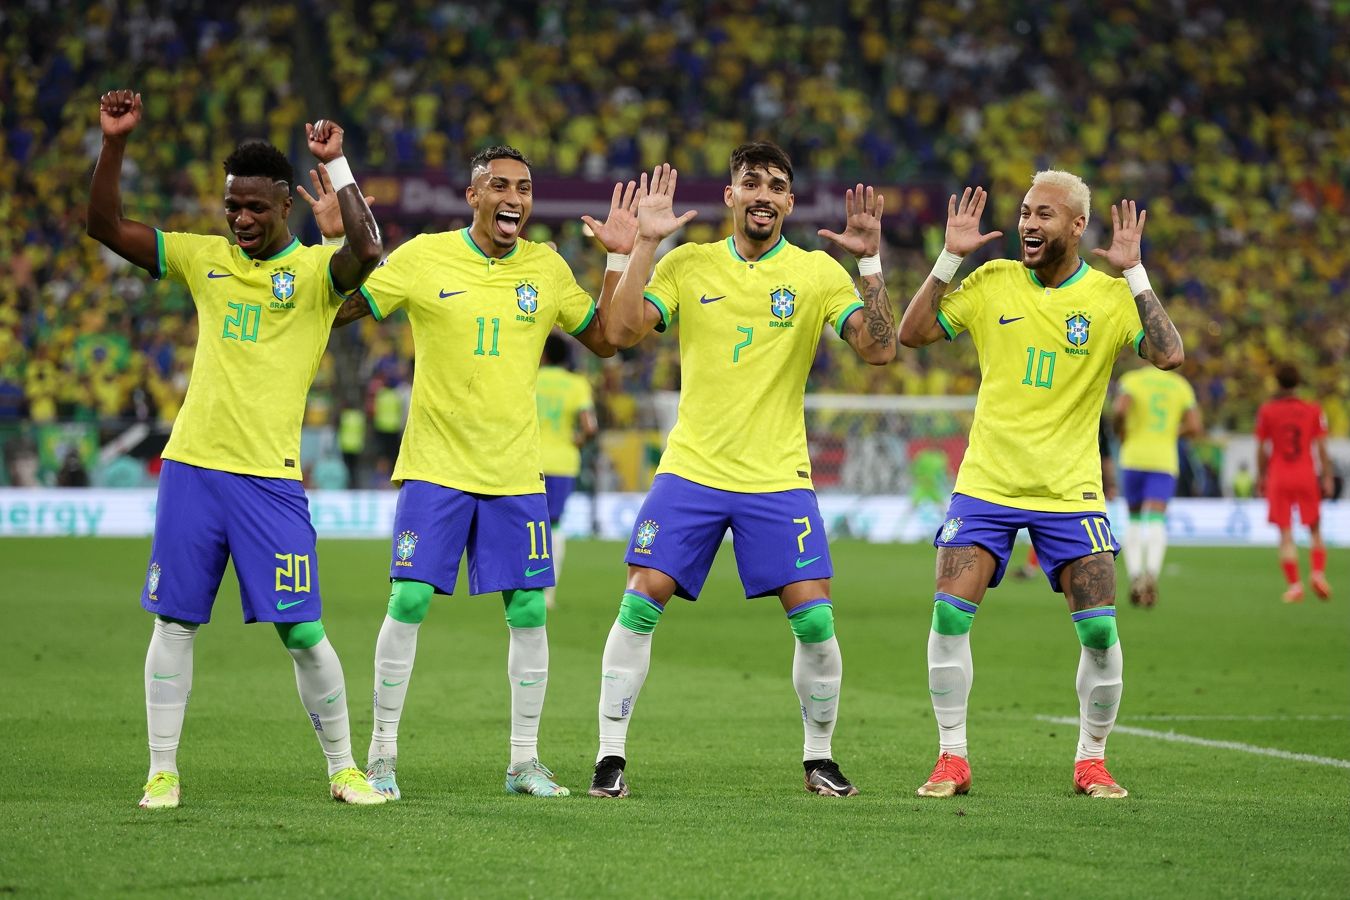 Бразилия разгромила Южную Корею в матче 1/8 финала ЧМ, забив четыре мяча в первом тайме